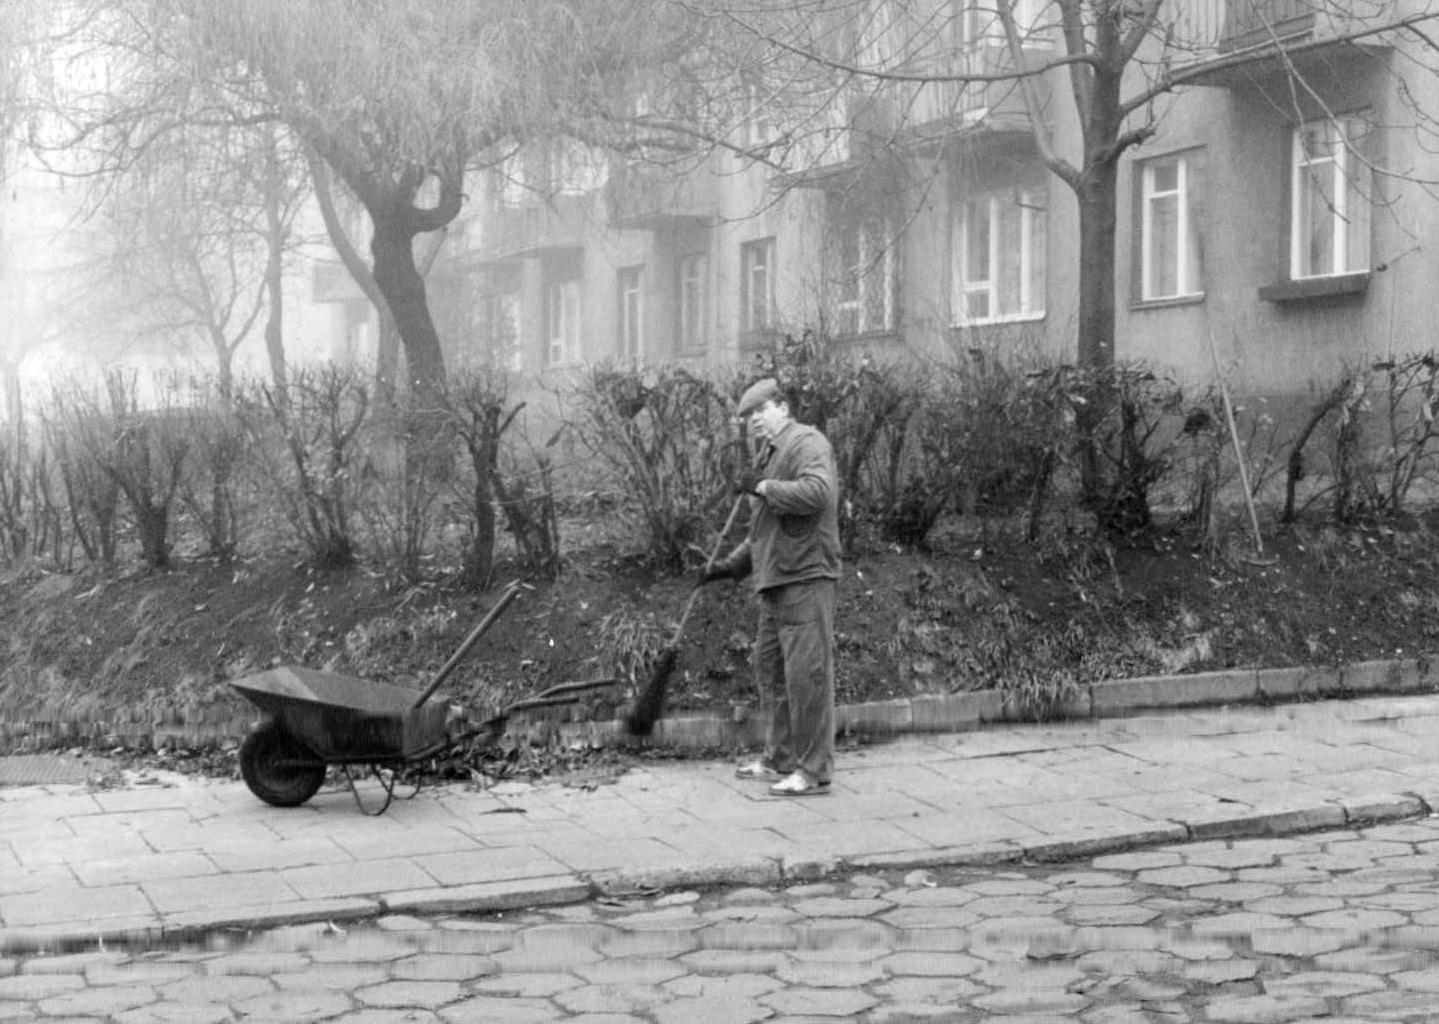 Łódź street sweeper, 1990